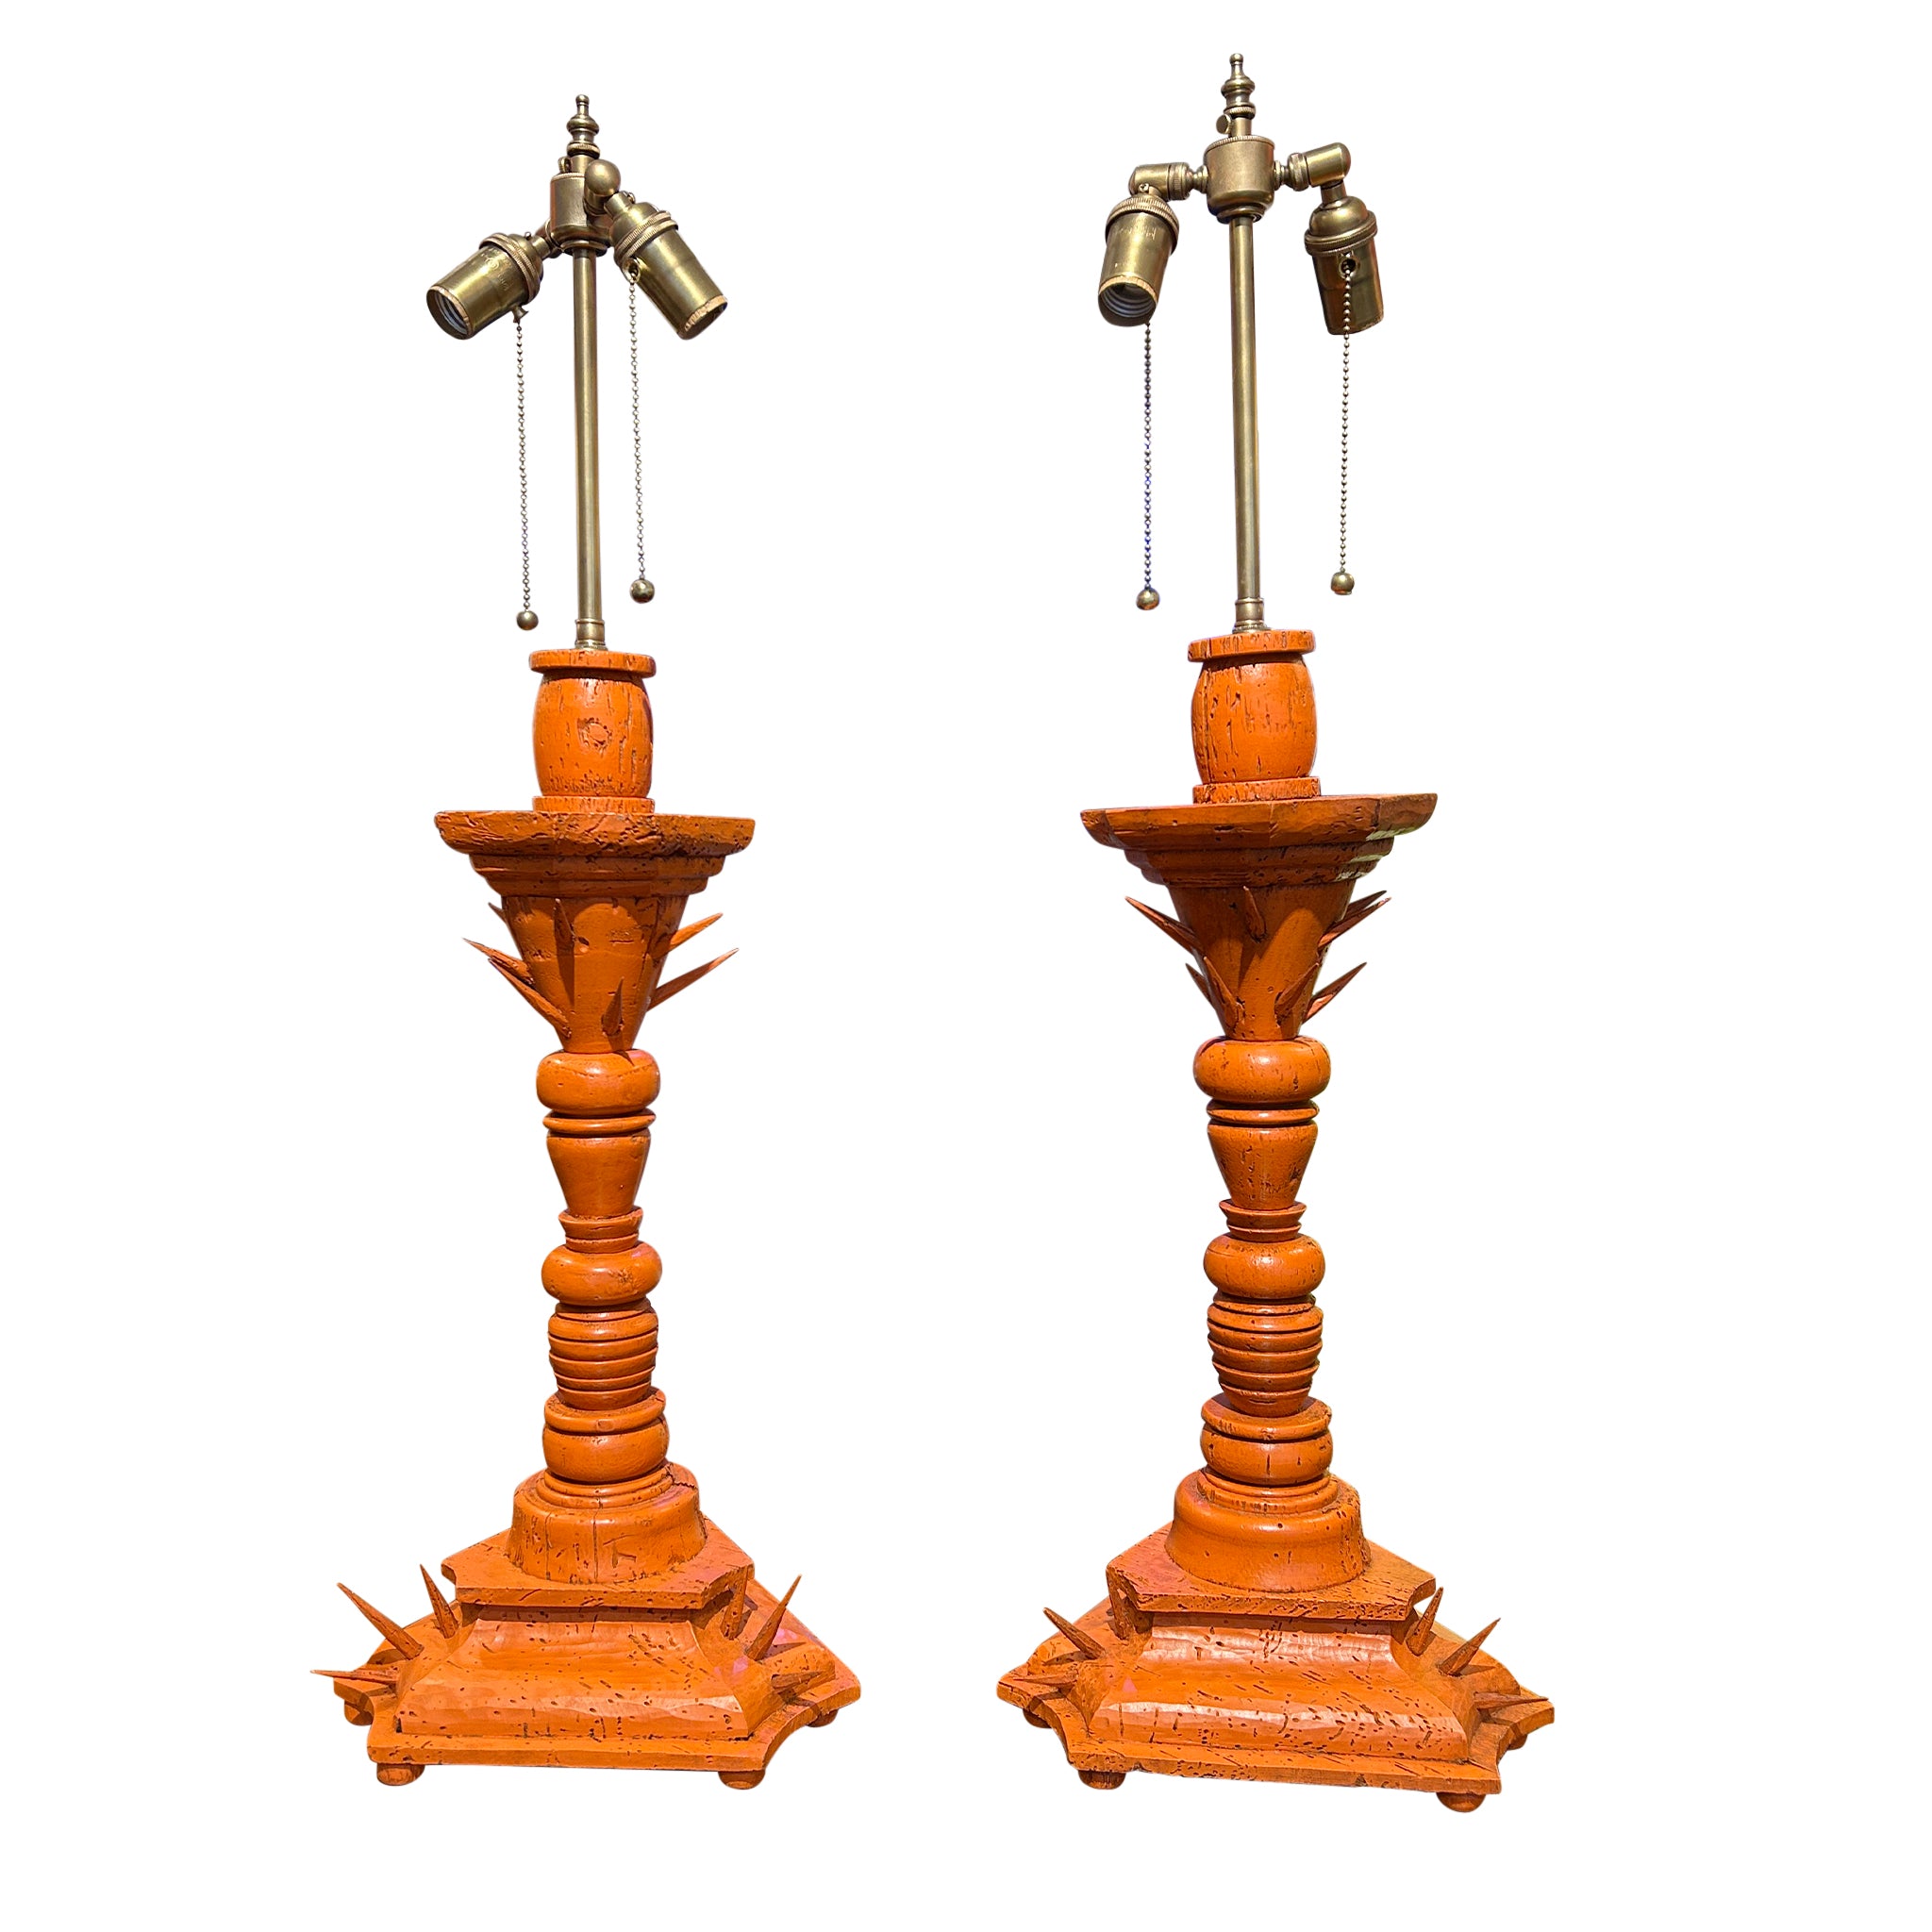 Pair of Rabat Lamps in Temple Red